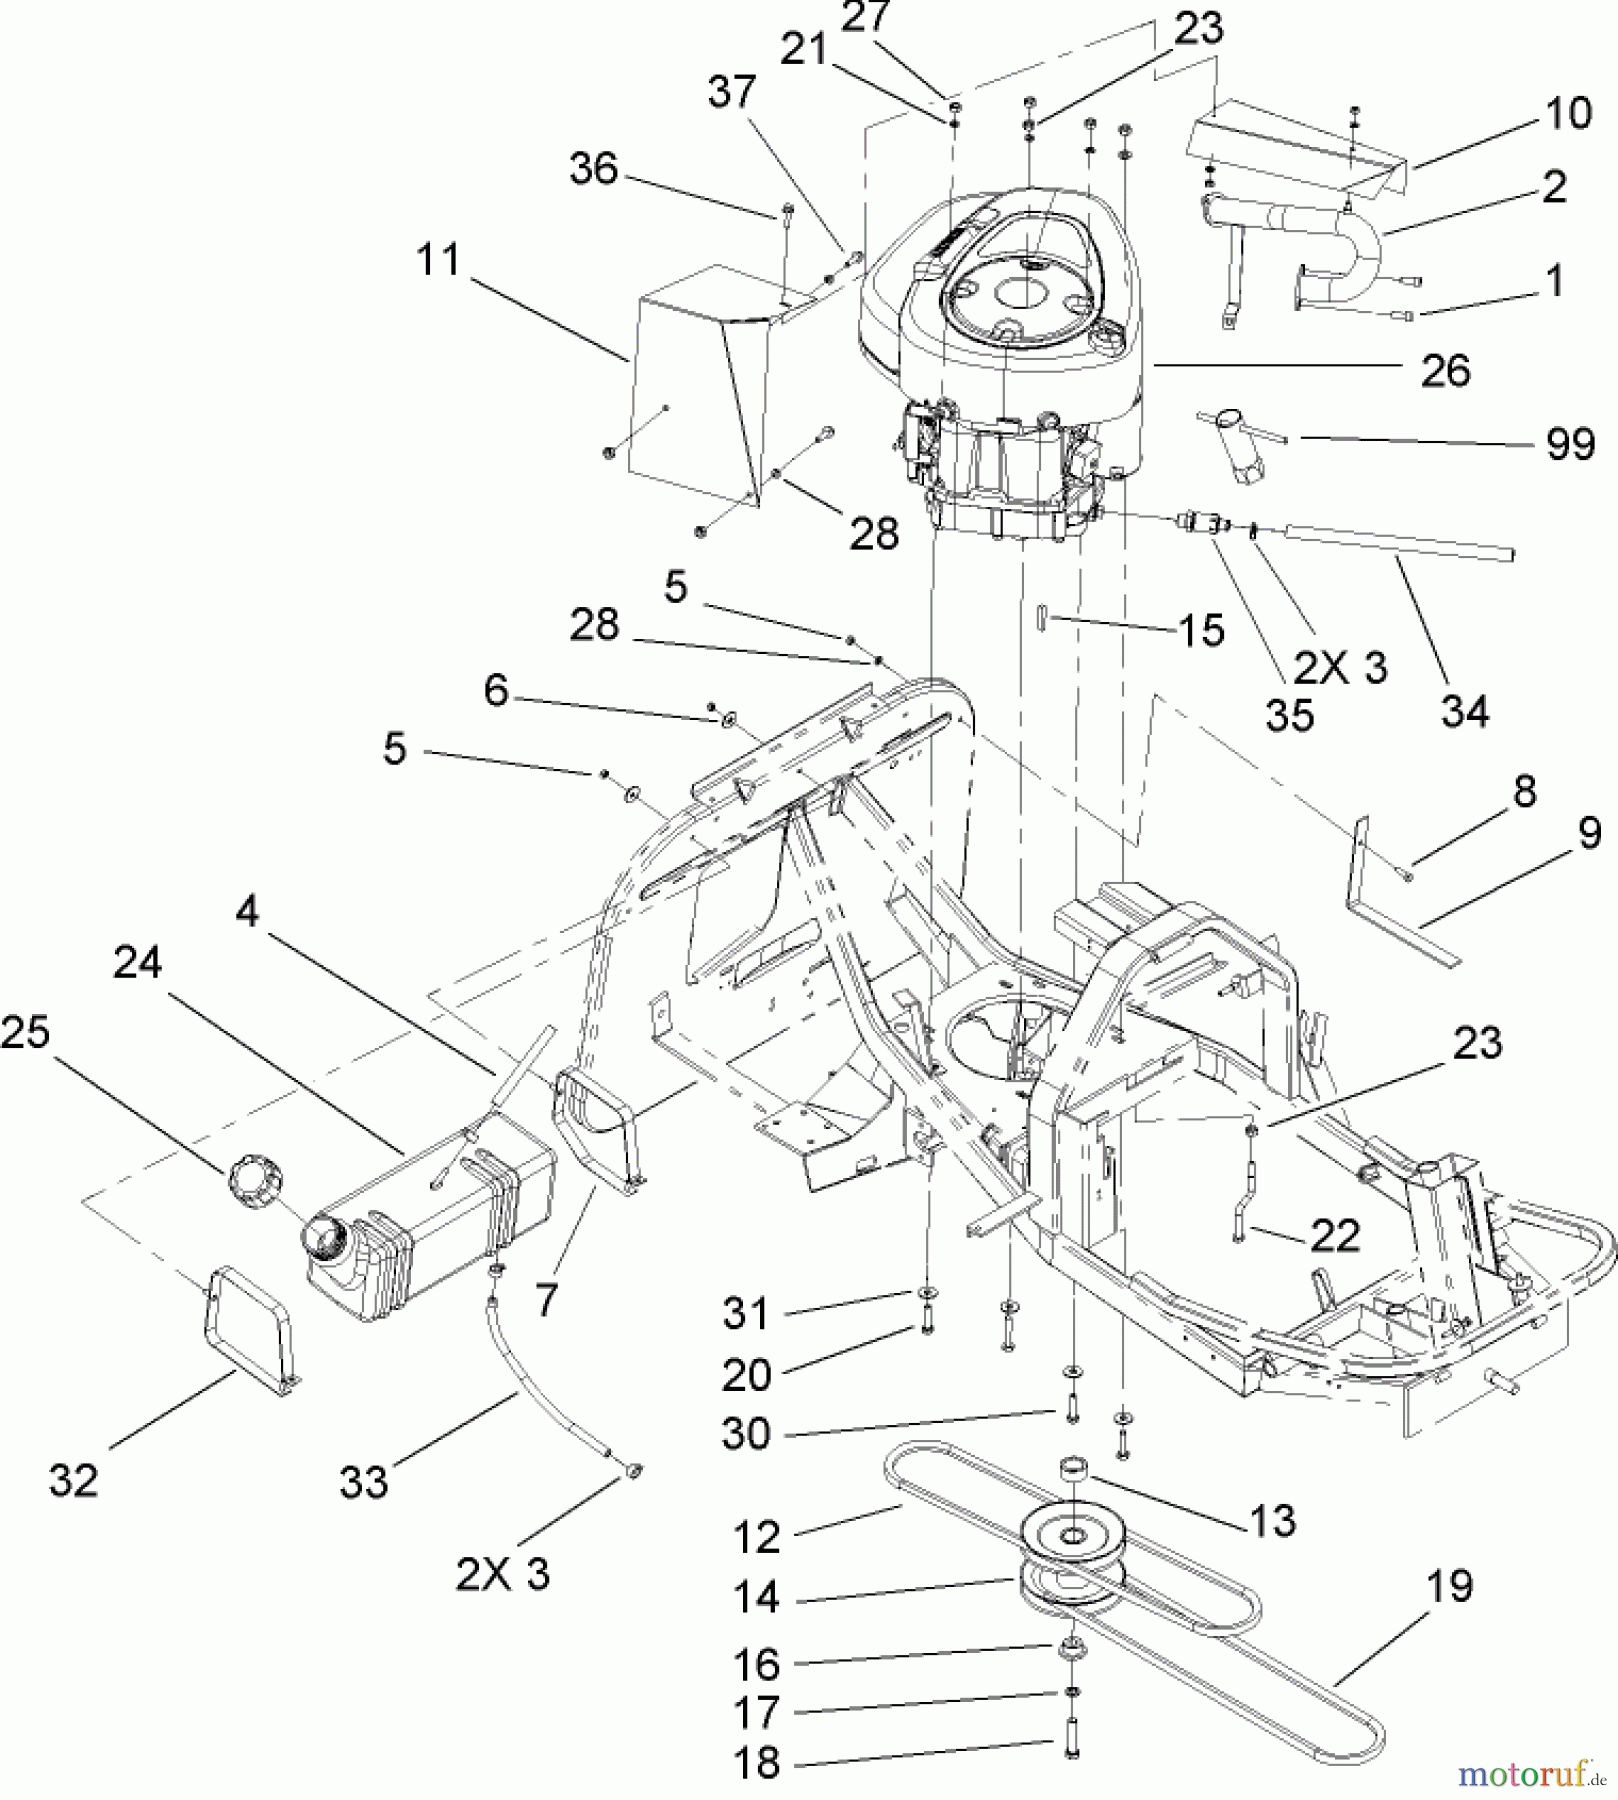  Toro Neu Mowers, Rear-Engine Rider 70186 (H132) - Toro H132 Rear-Engine Riding Mower, 2005 (250000001-250999999) ENGINE AND FUEL TANK ASSEMBLY